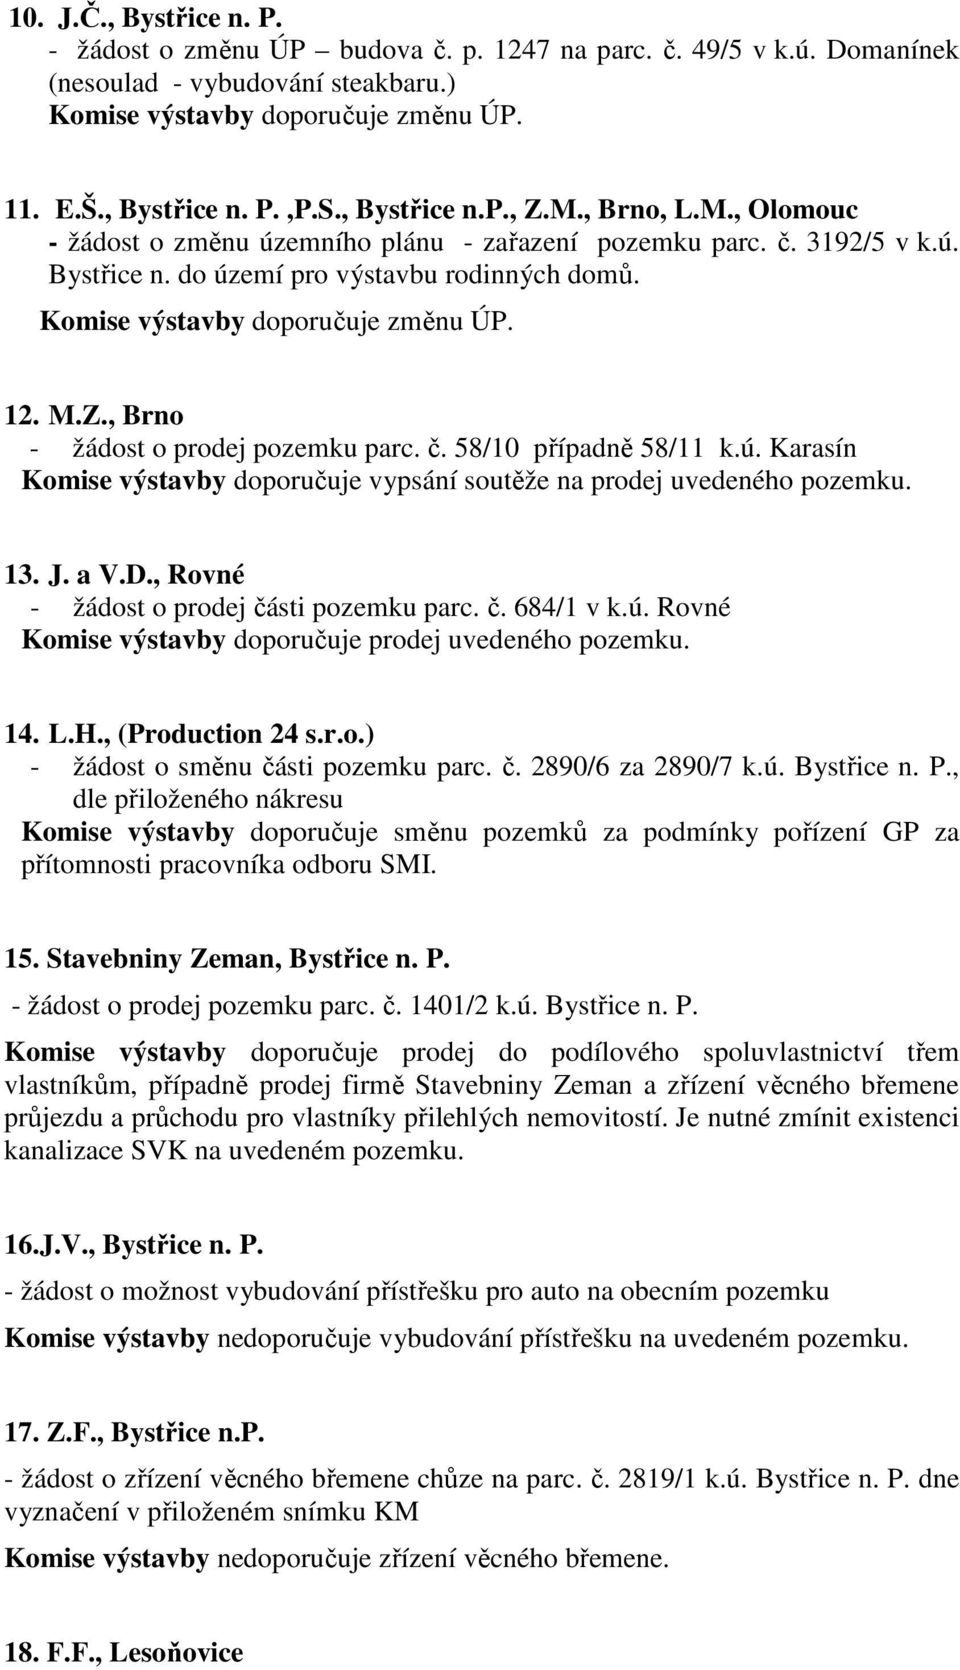 Komise výstavby doporučuje změnu ÚP. 12. M.Z., Brno - žádost o prodej pozemku parc. č. 58/10 případně 58/11 k.ú. Karasín Komise výstavby doporučuje vypsání soutěže na prodej uvedeného pozemku. 13. J.